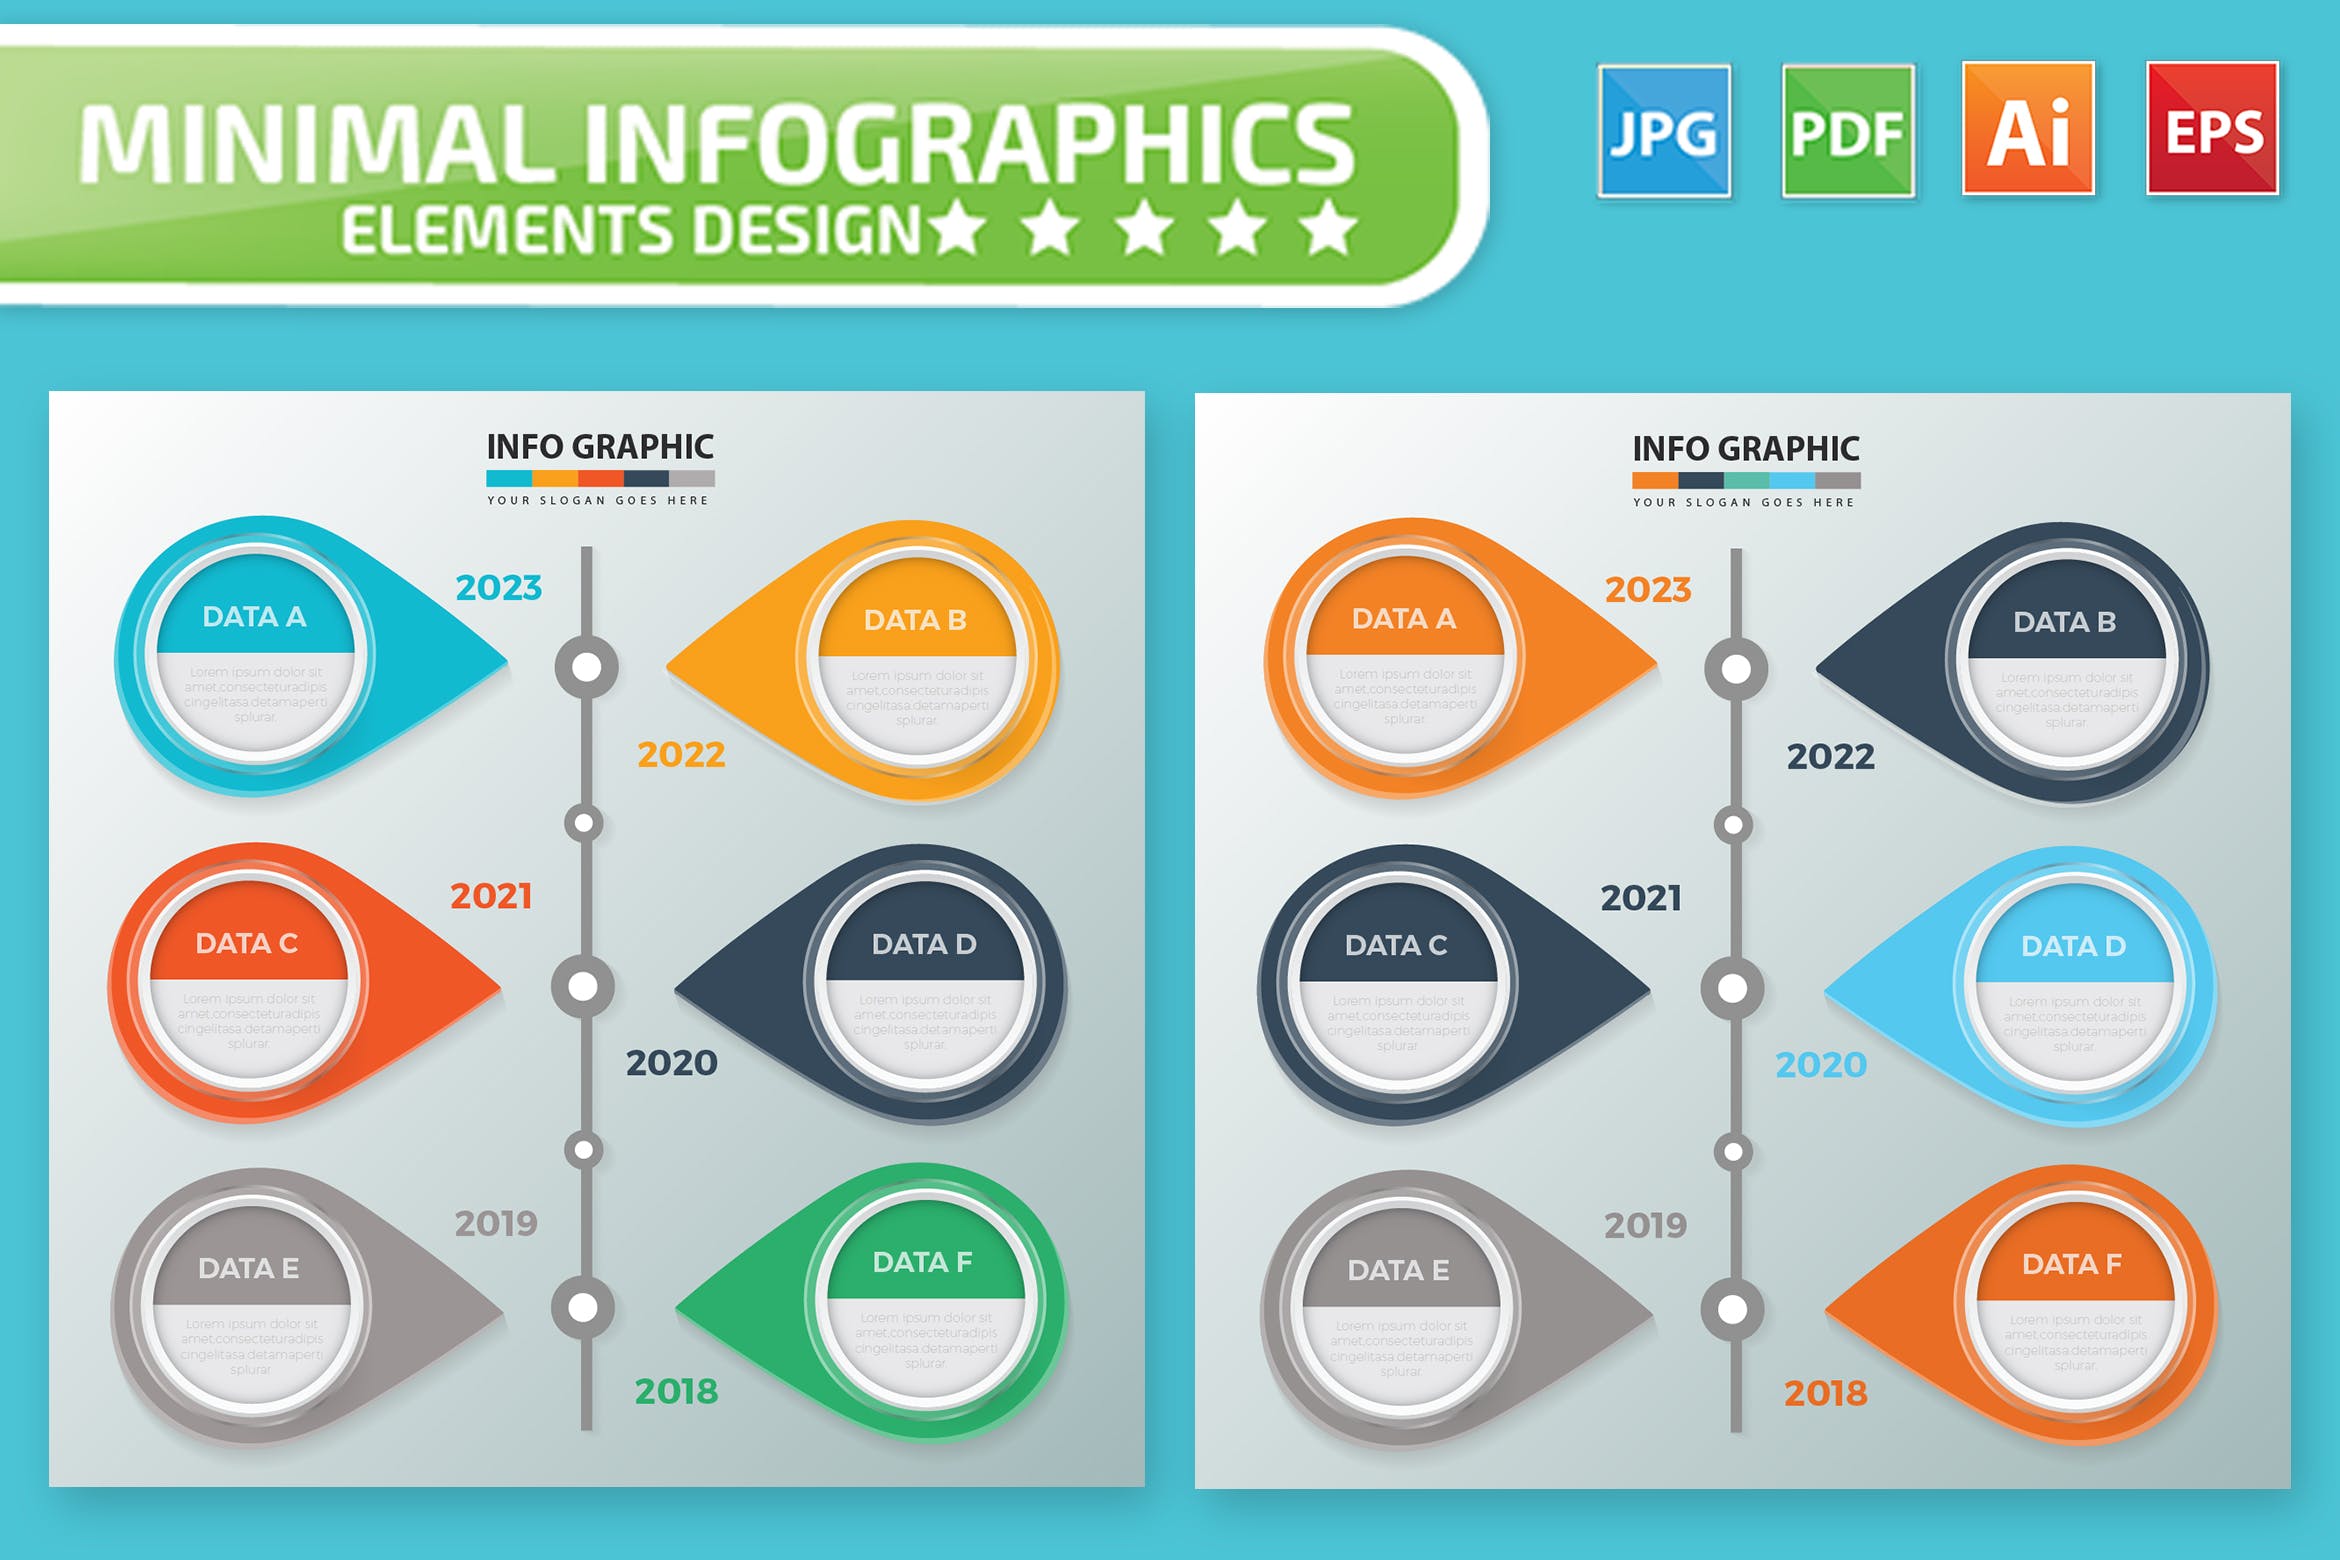 时间轴大事记信息图表制作设计素材 Timeline Infographic Elements Design插图